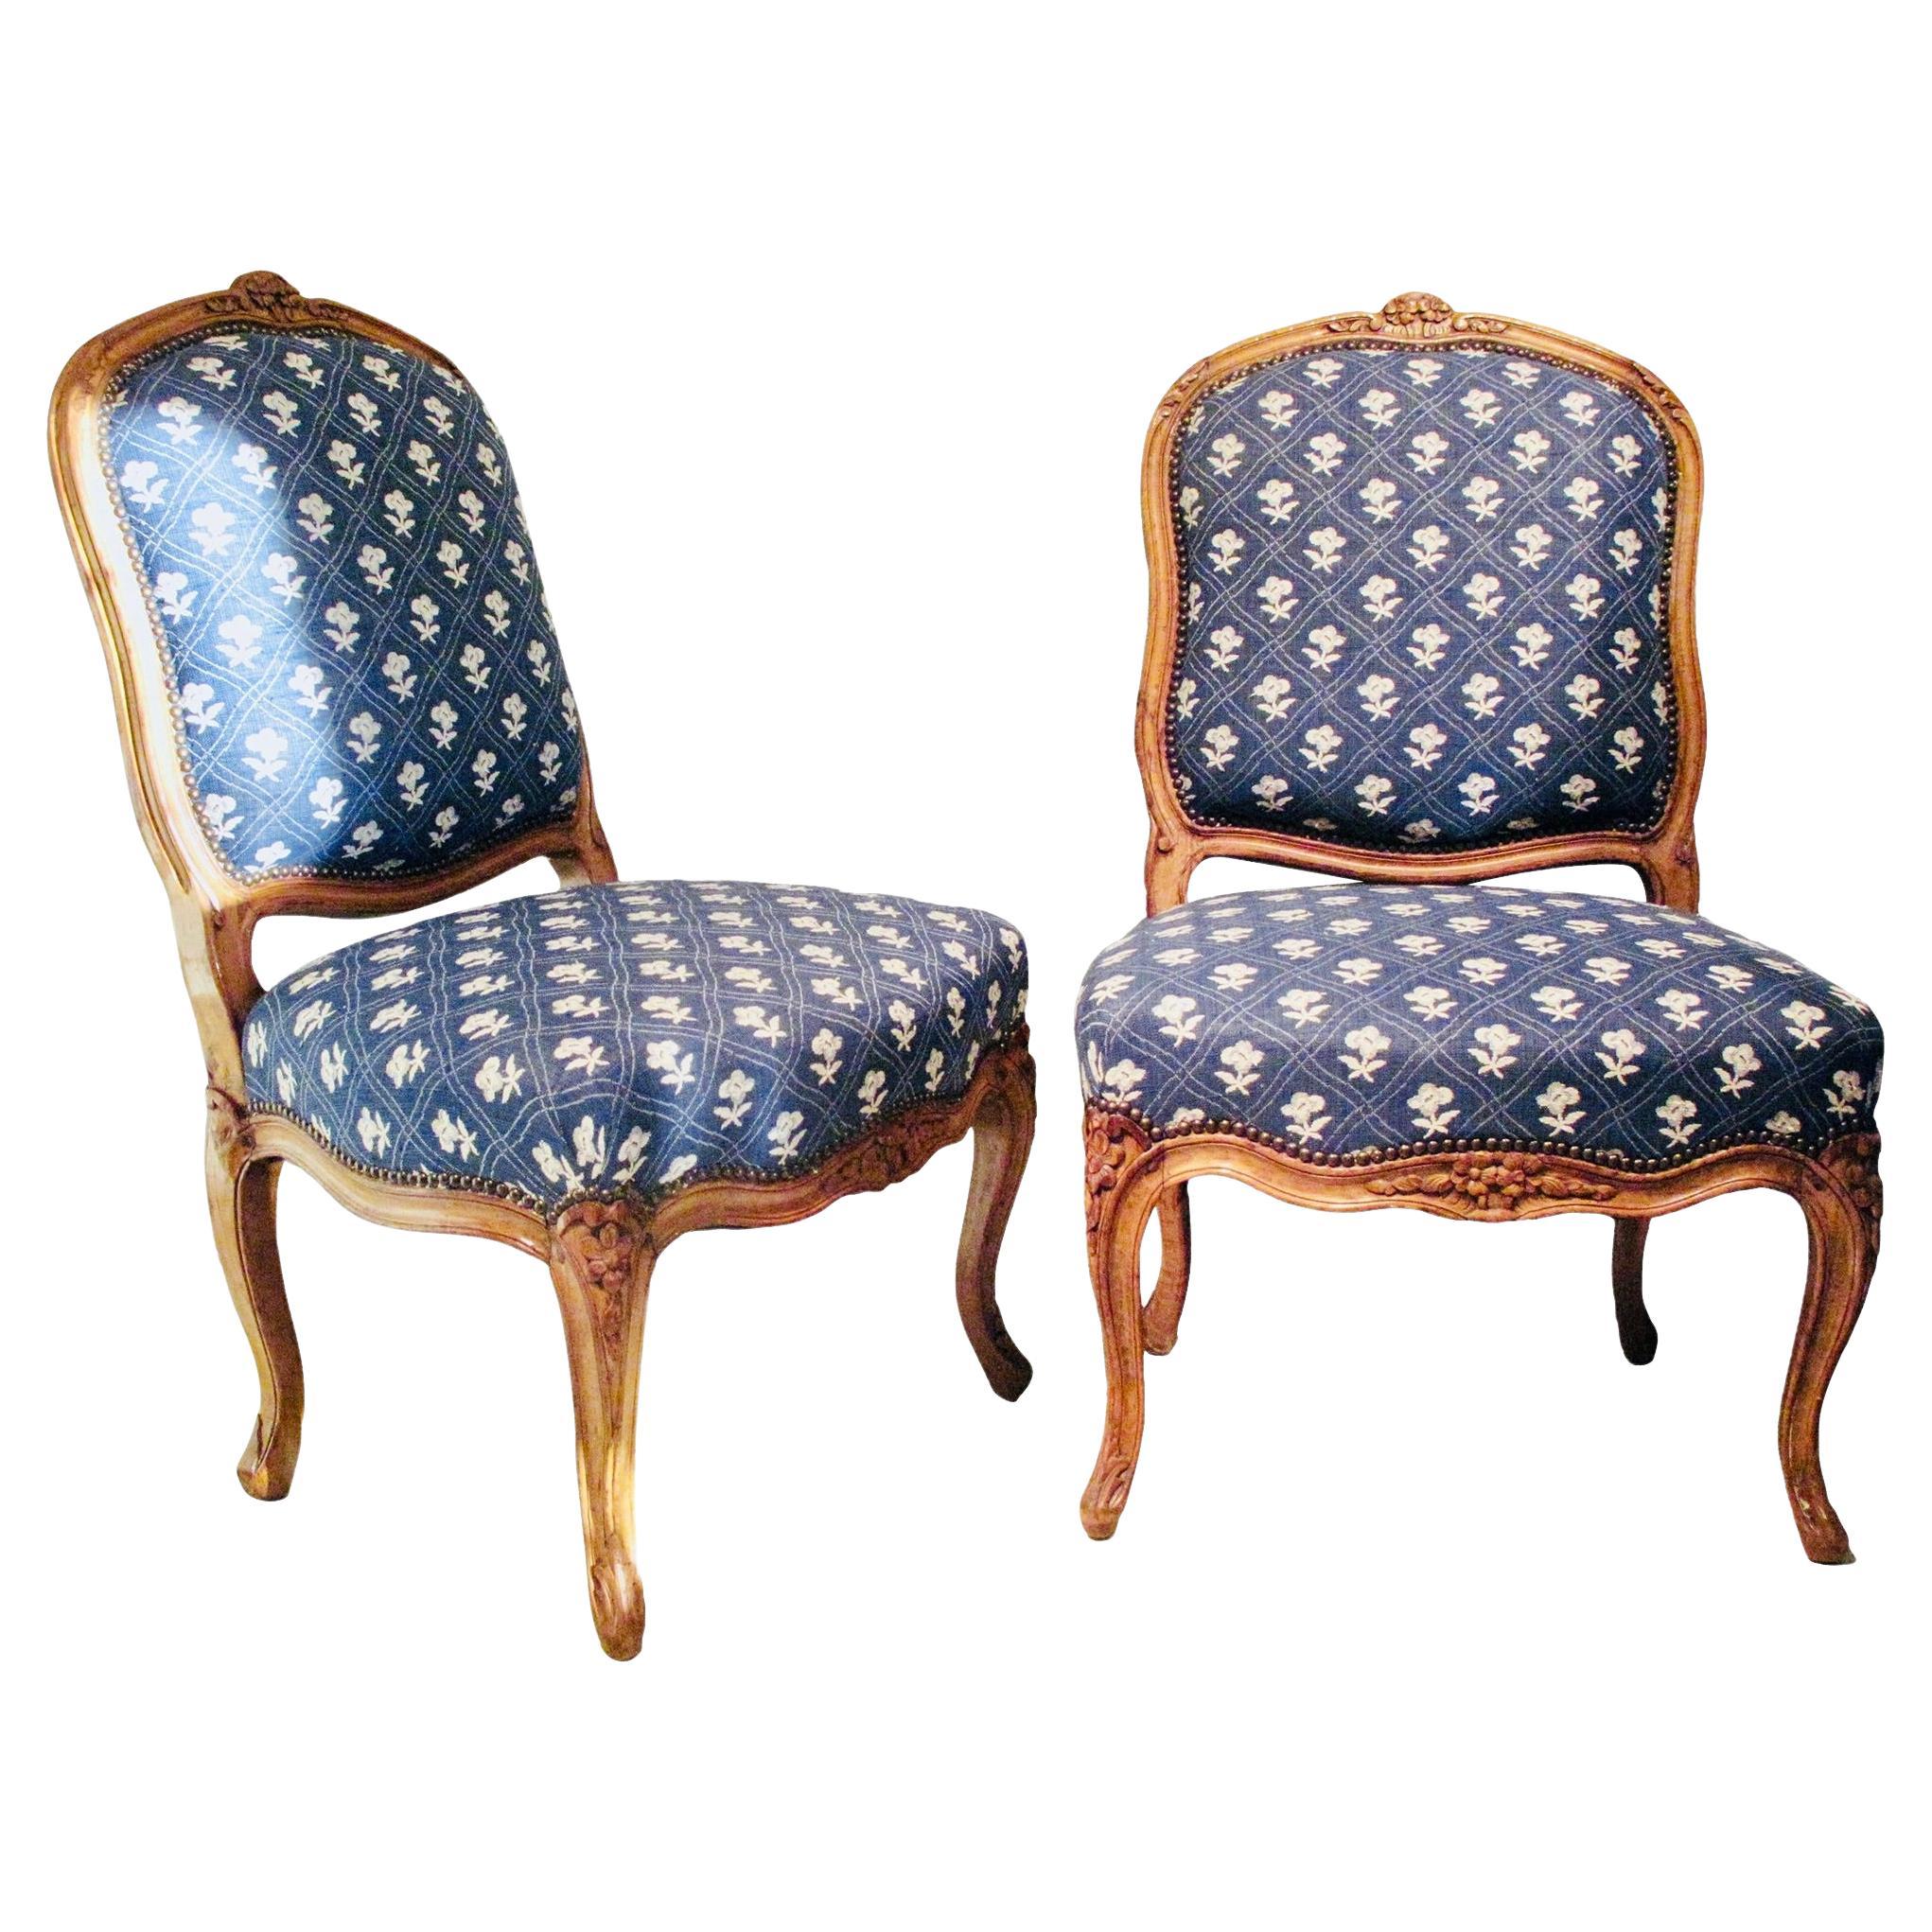 Paire de chaises provinciales françaises Louis XV en bois de hêtre sculpté